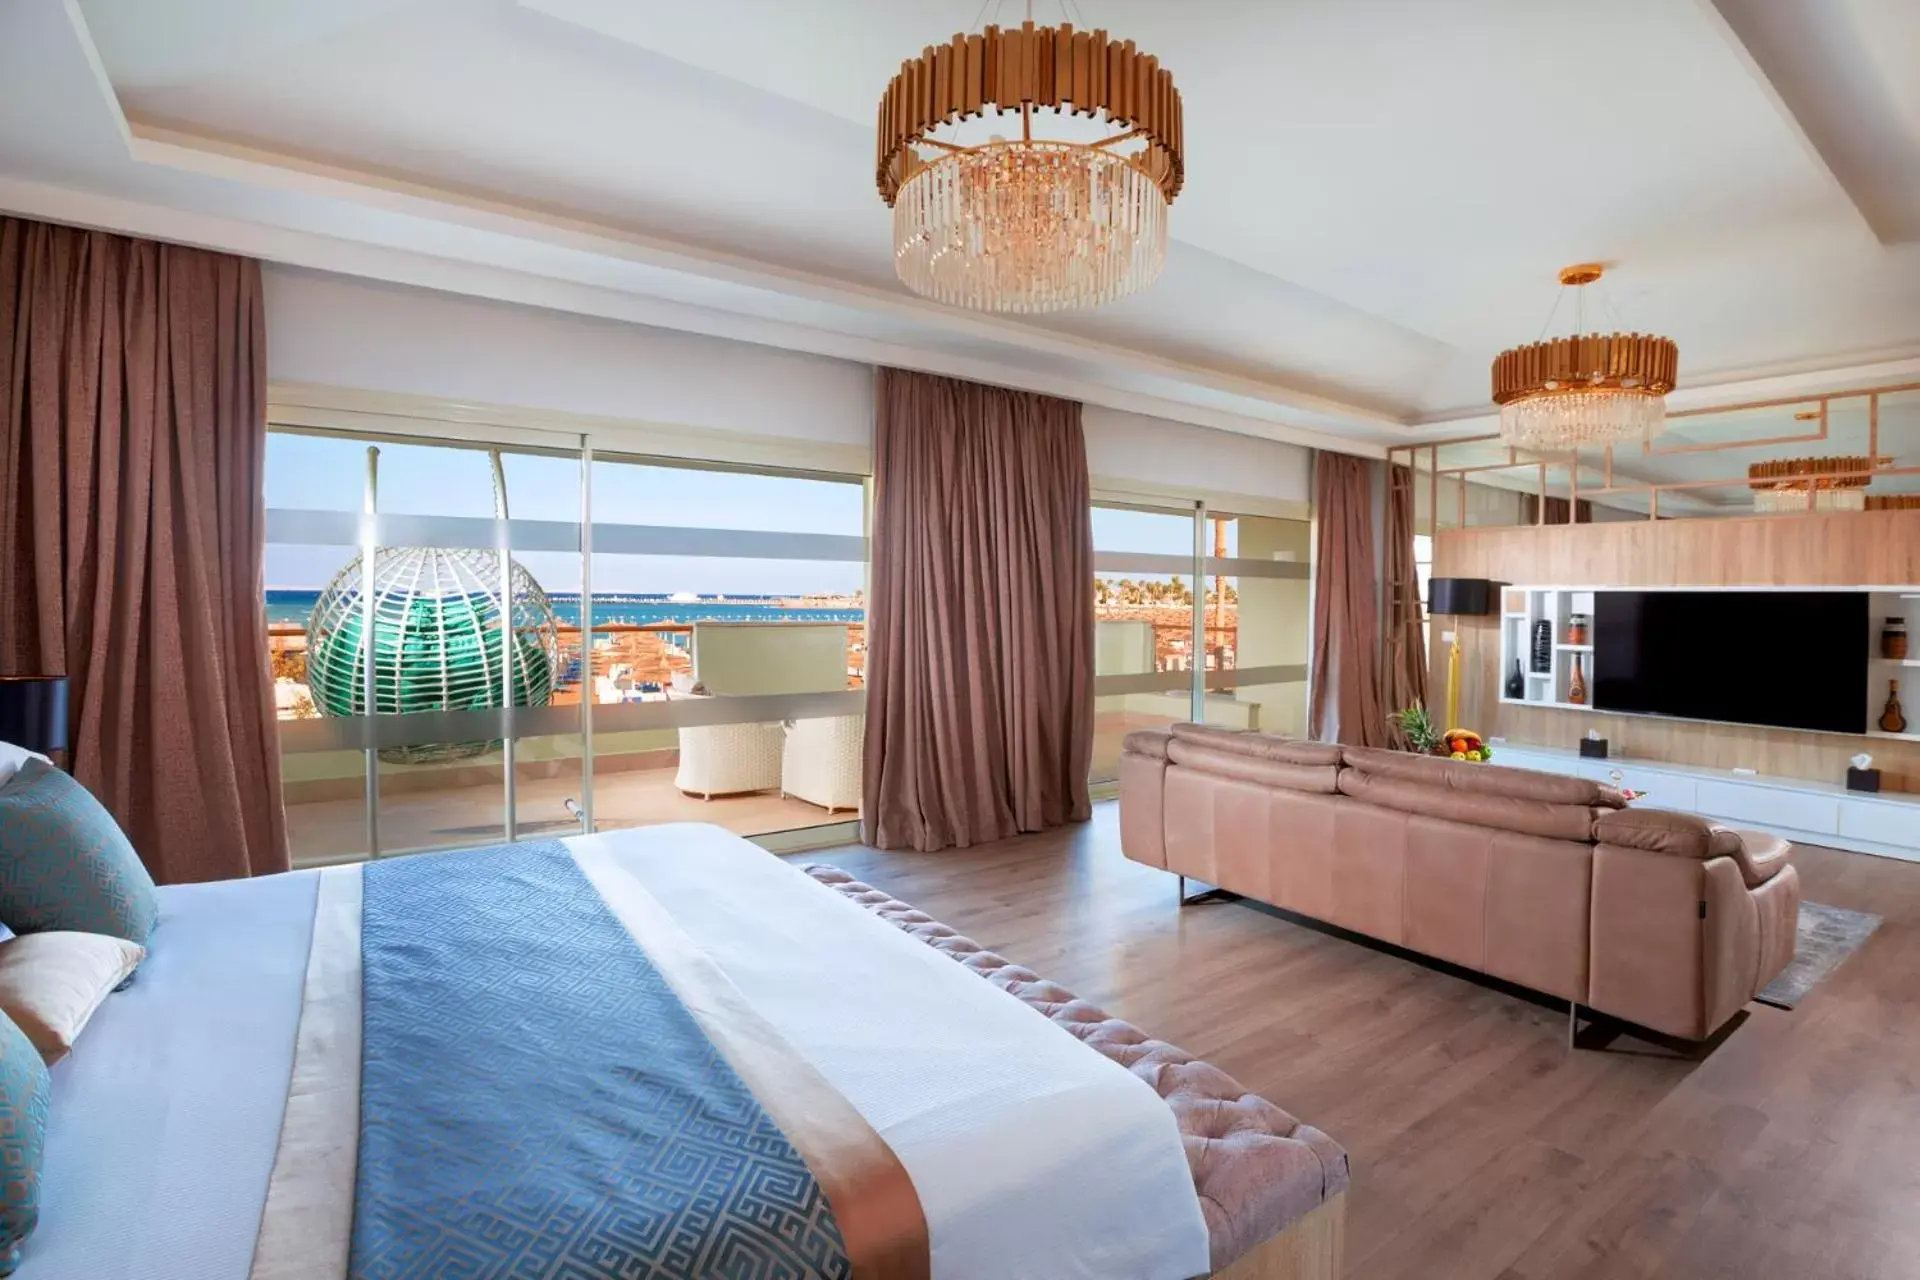 Bed in Pickalbatros Dana Beach Resort - Hurghada